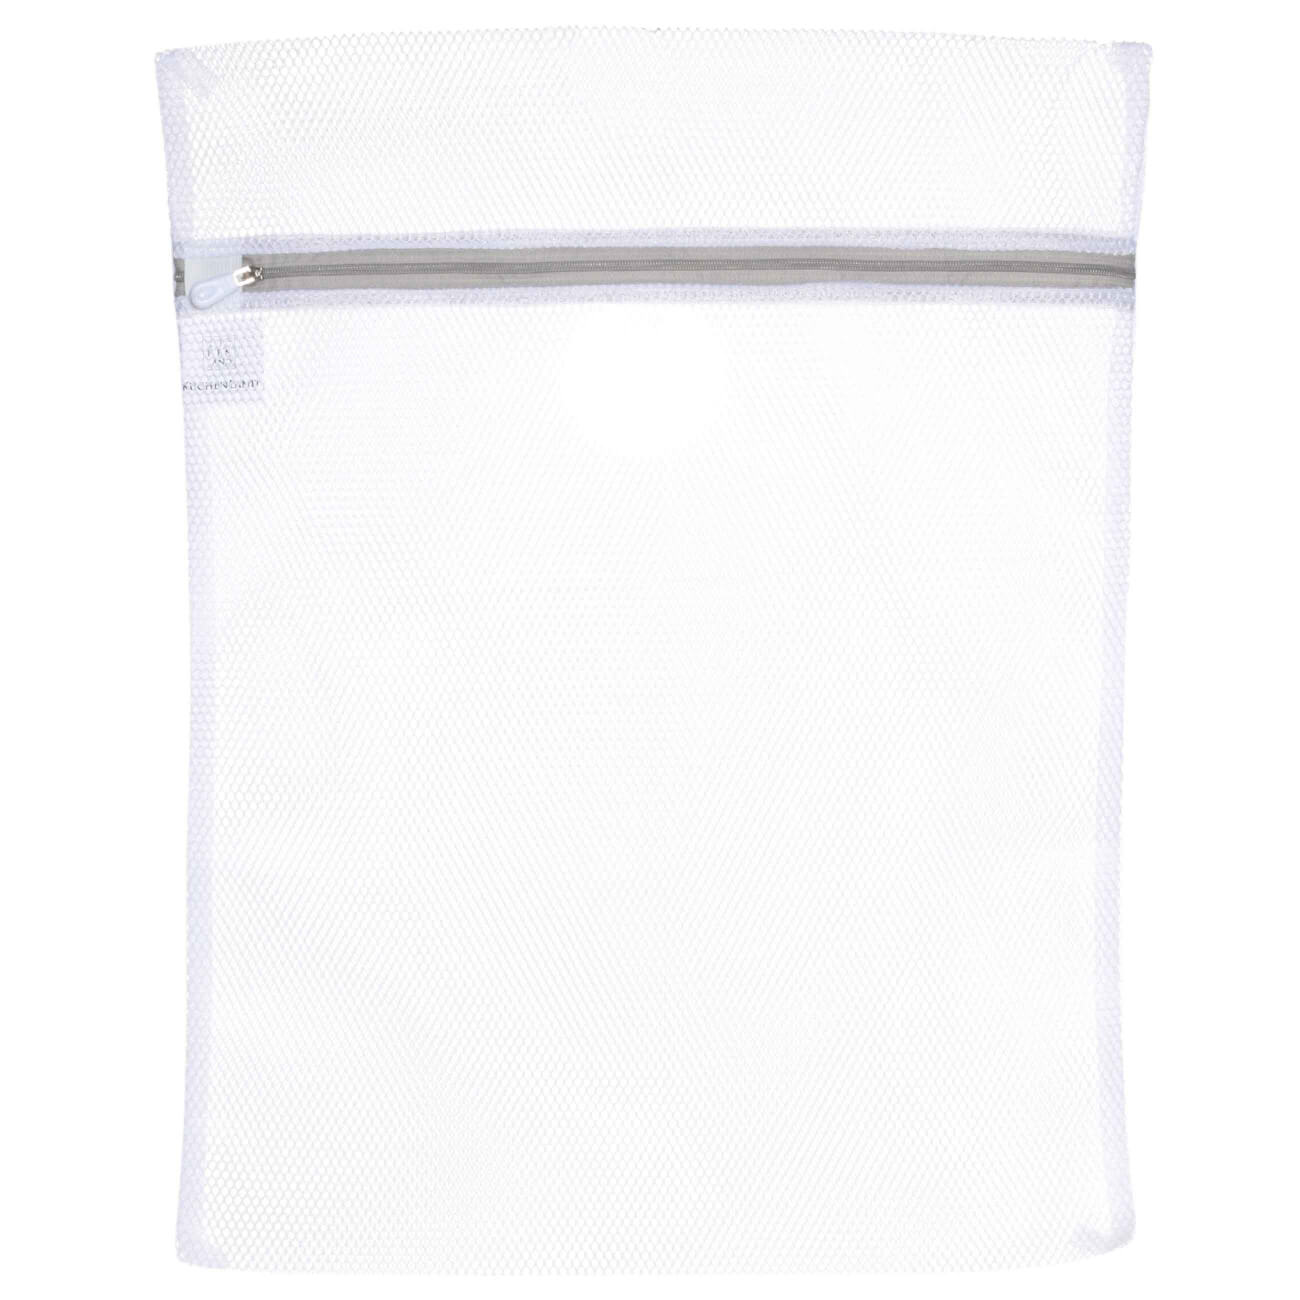 Мешок для стирки одежды, 40х50 см, полиэстер, бело-серый, Safety мешок для стирки бюстгалтеров 17х15 см с защитой полиэстер бело серый safety